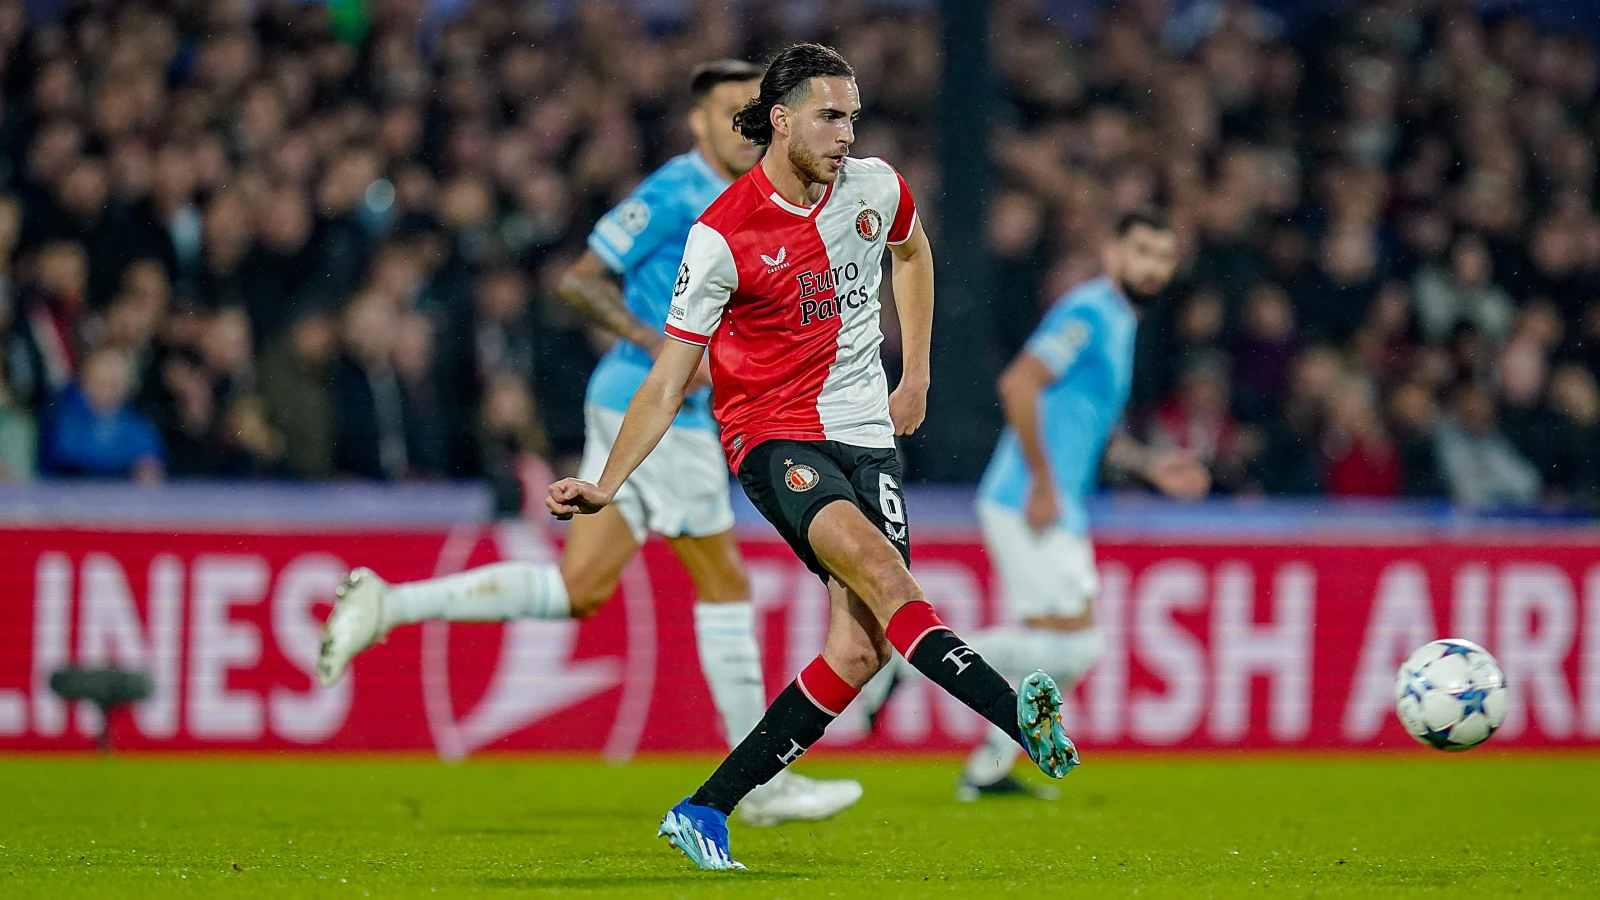 LIVE | Feyenoord - SS Lazio 3-1 | Einde wedstrijd